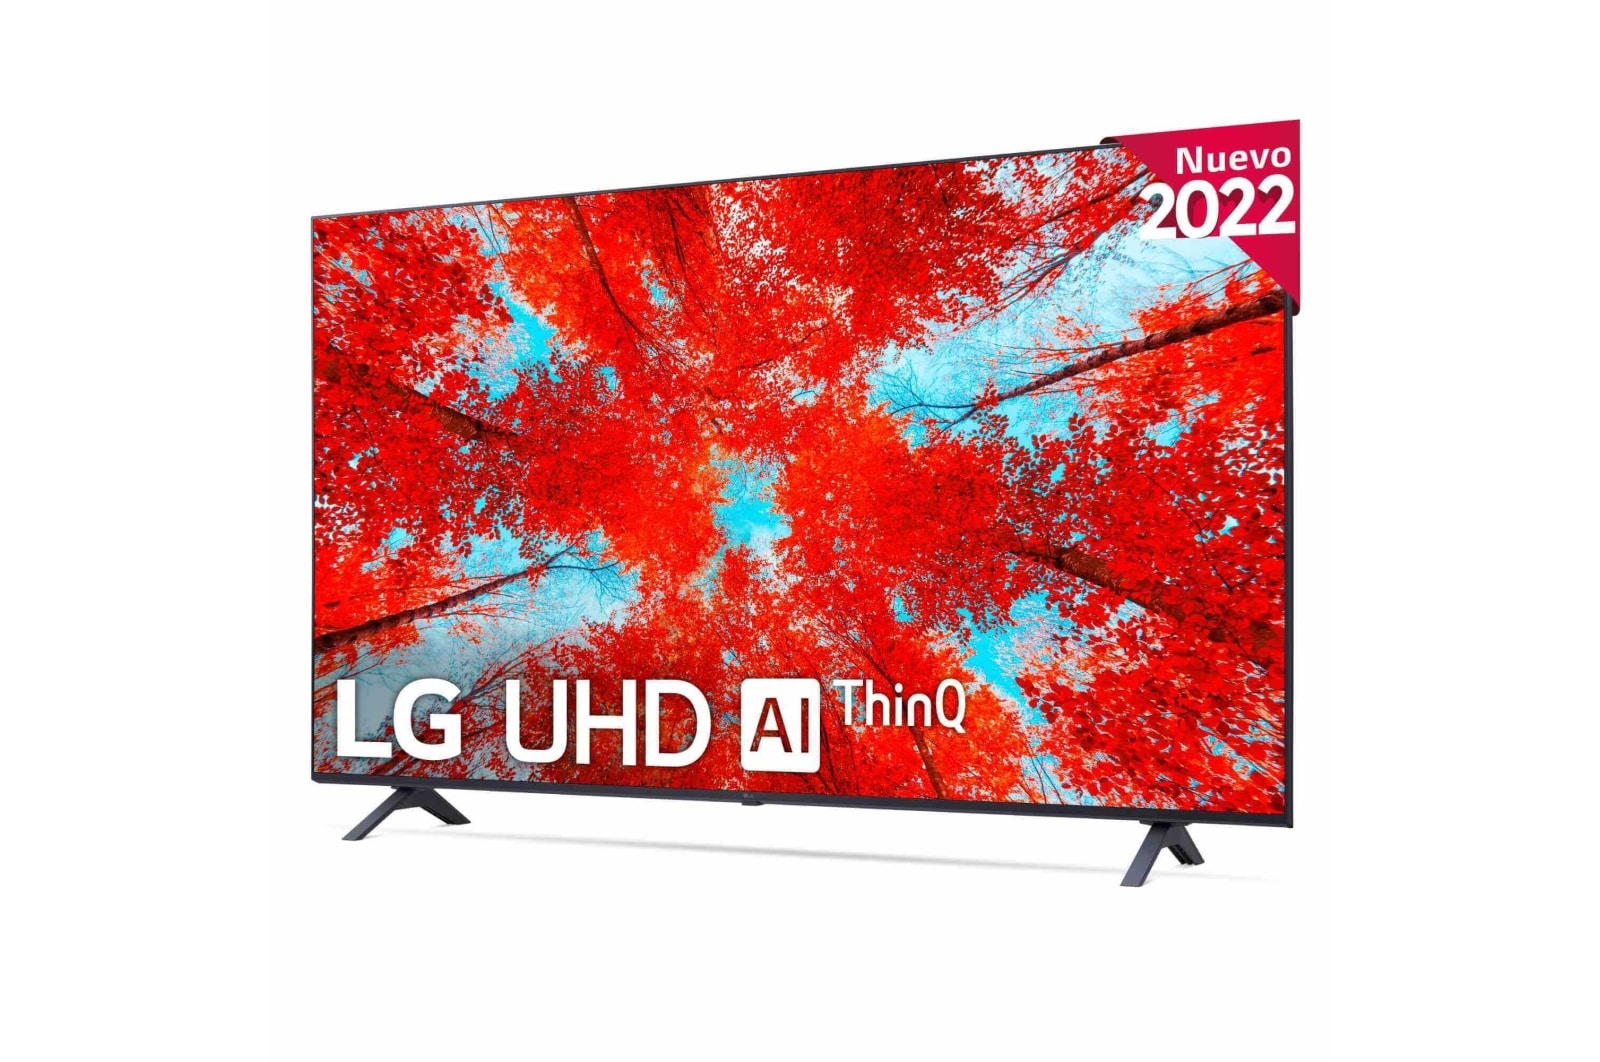 LG Televisor LG HD Ready, Procesador de Gran Potencia a5 Gen 5, compatible  con formatos HDR 10, HLG, HGiG. Smart TV webOS22.